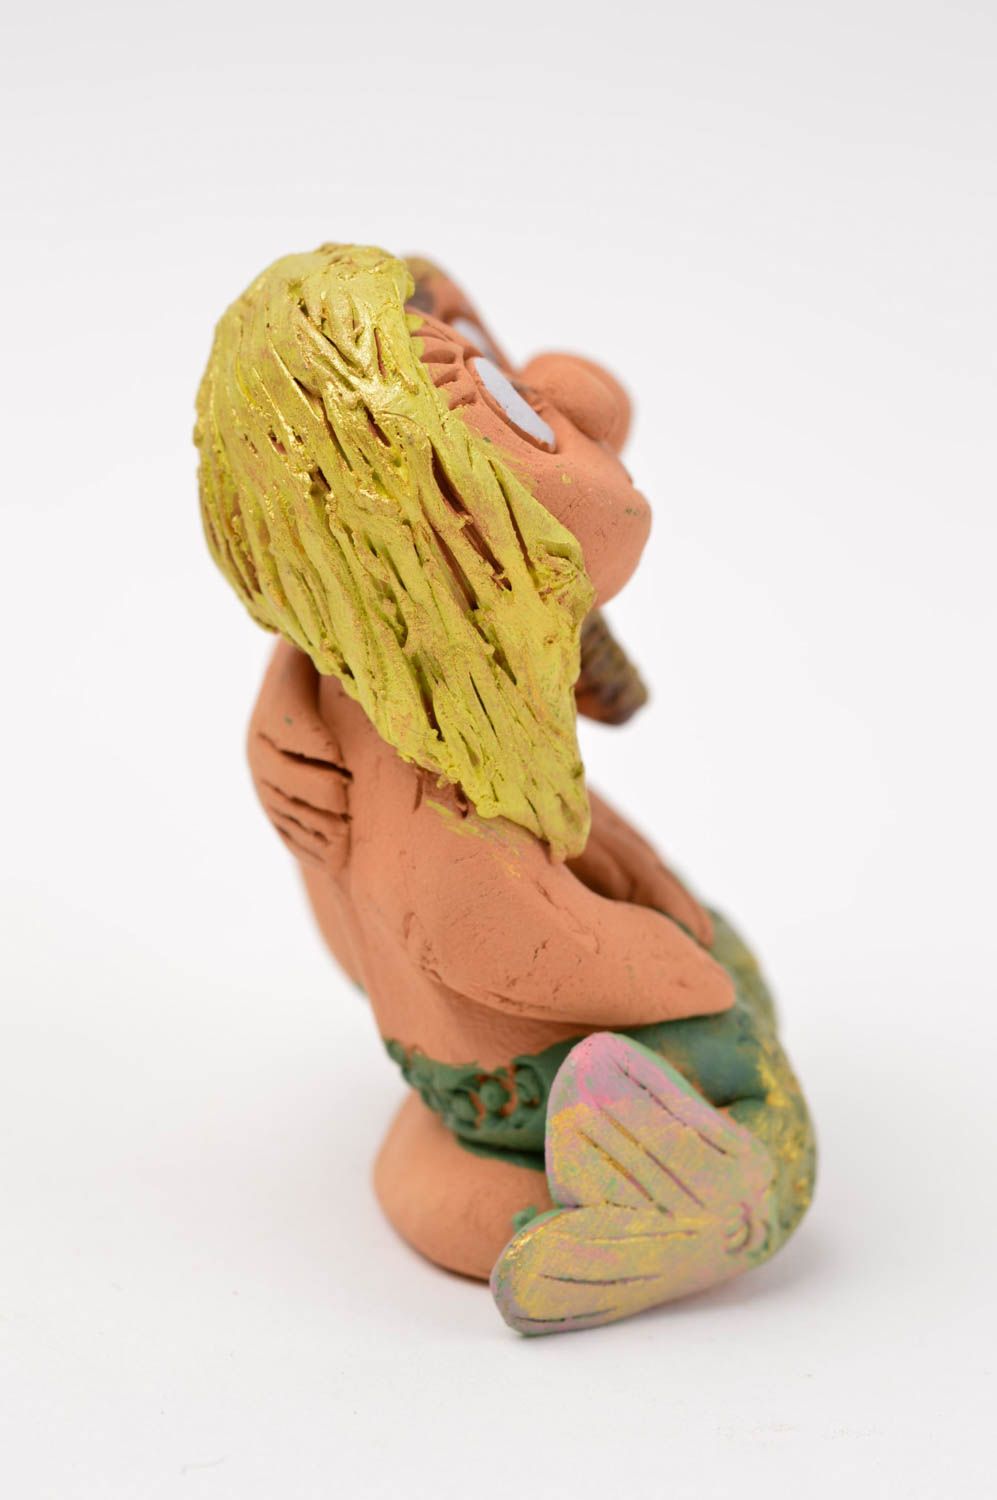 Статуэтка ручной работы фигурка людей забавная глиняная статуэтка Морская пара фото 2